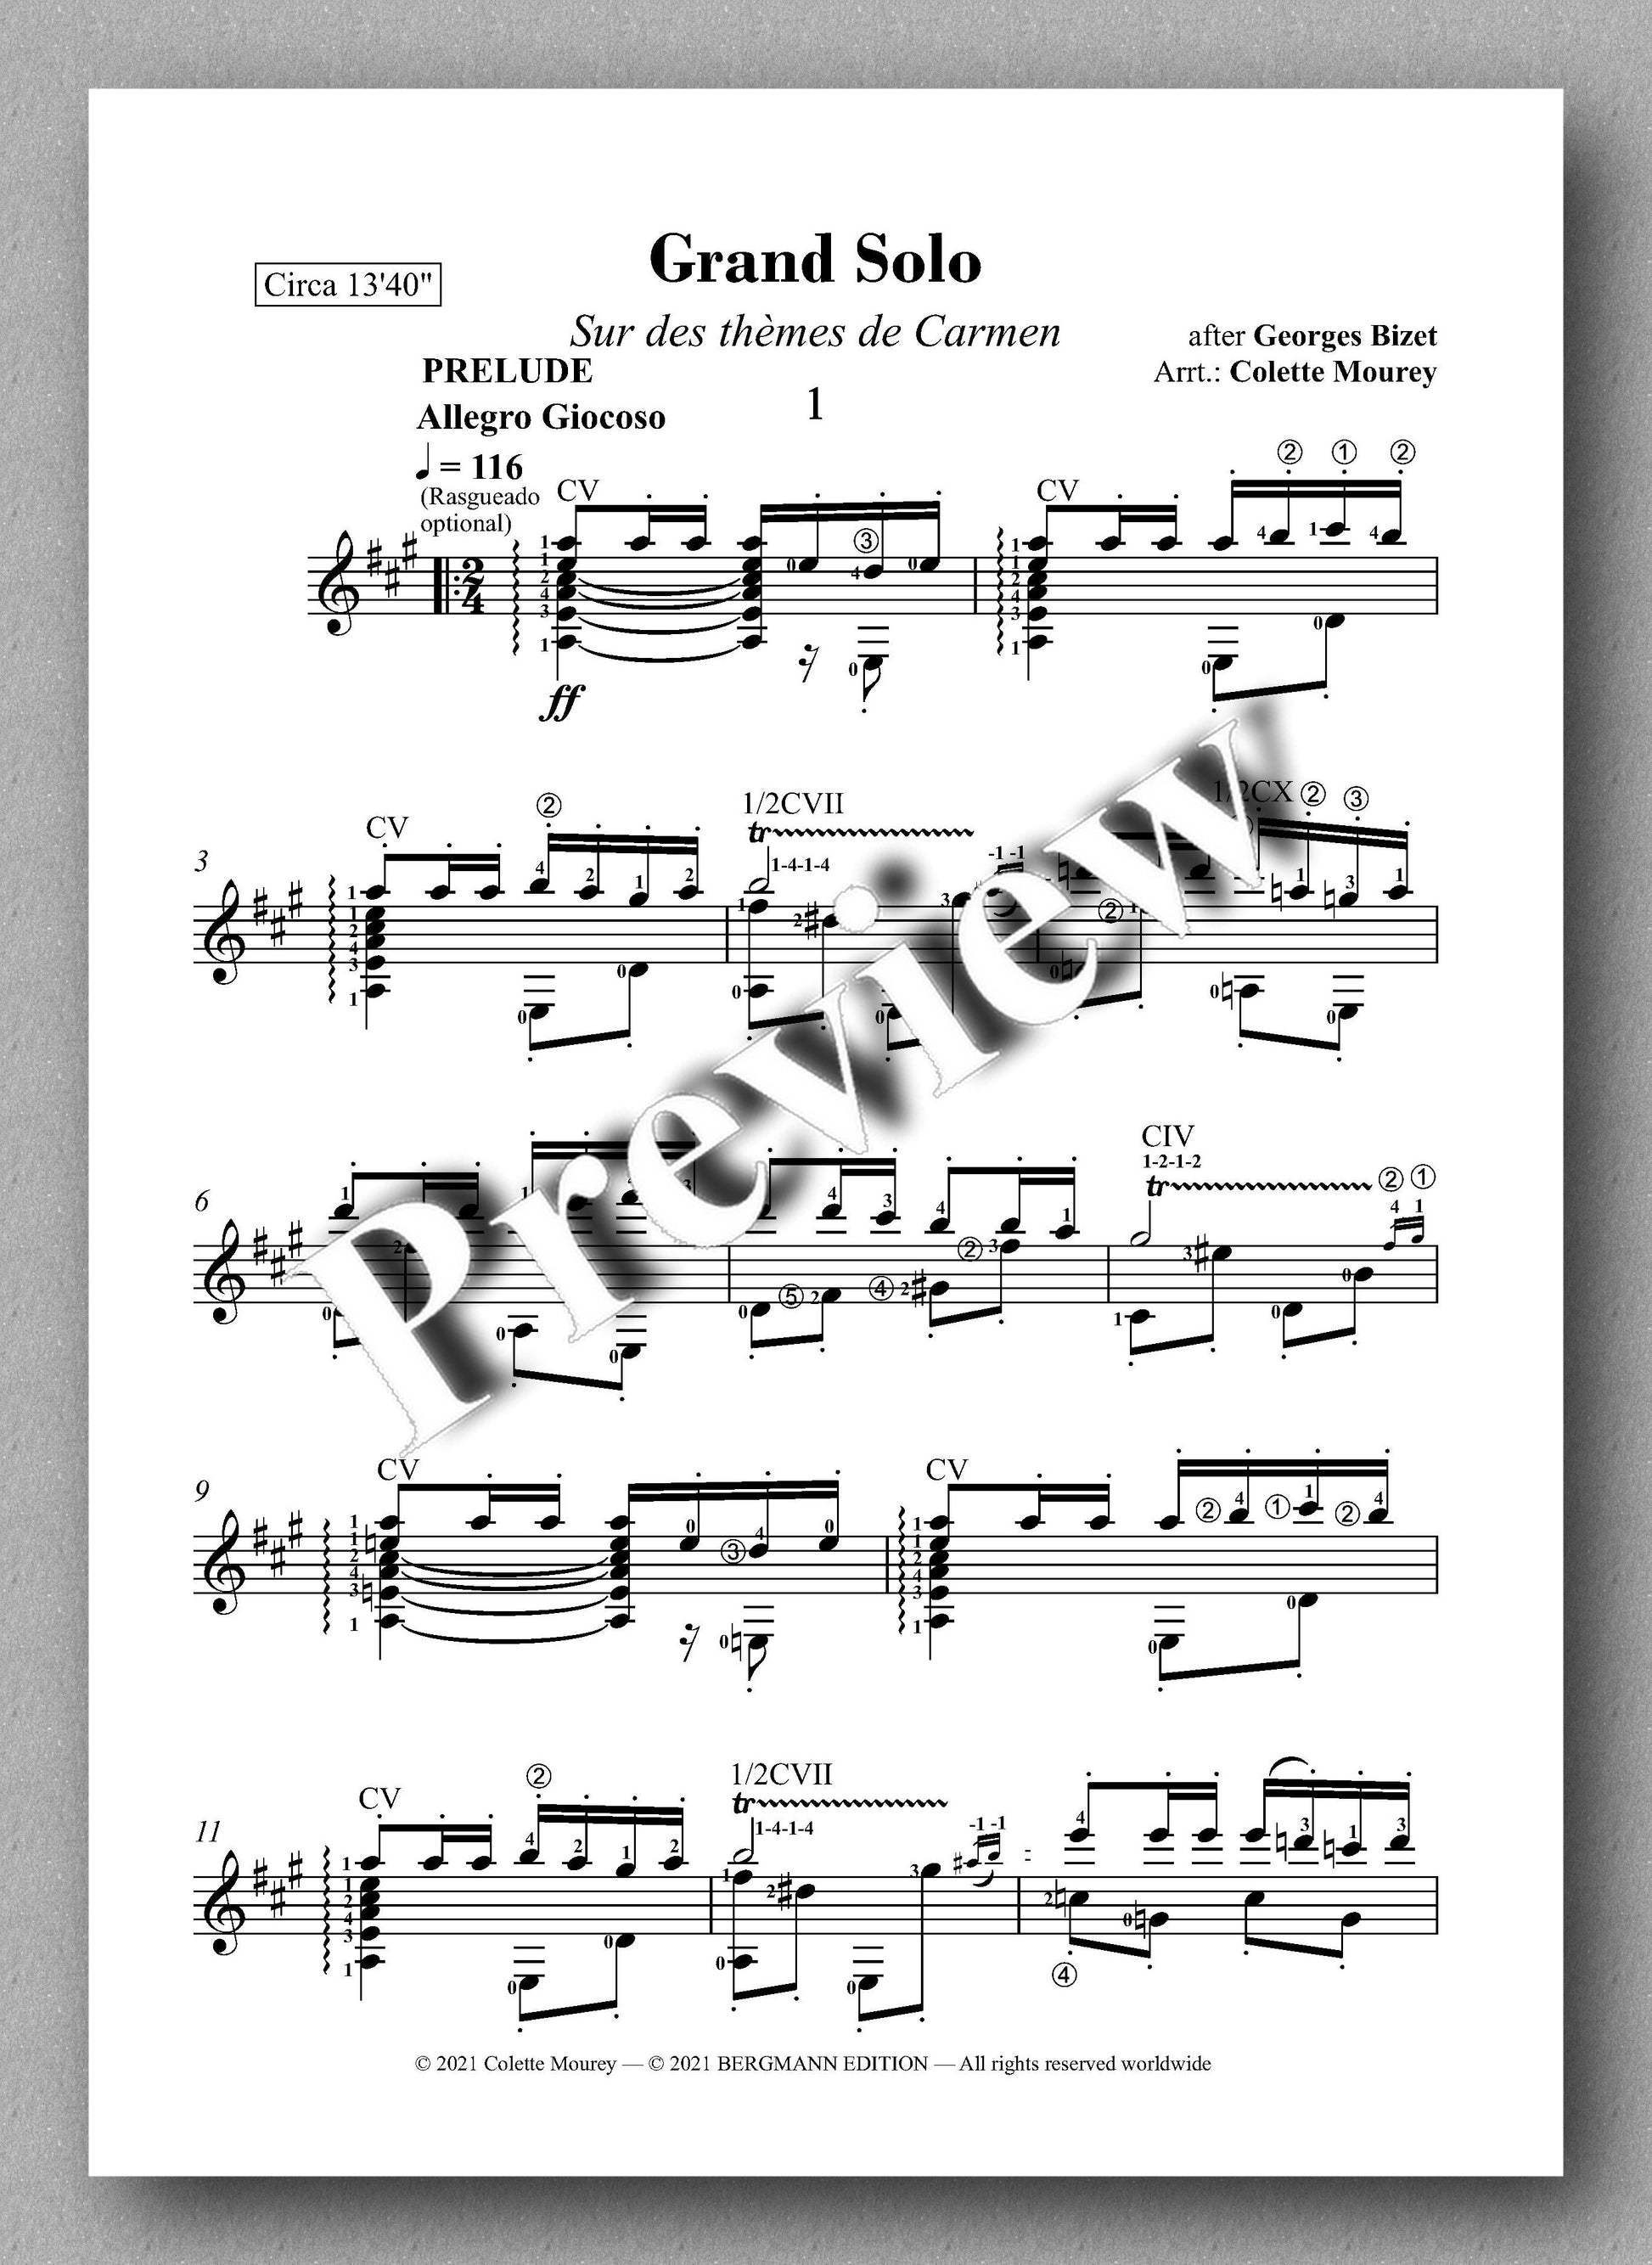 Bizet-Mourey, Grand Solo - music score 1